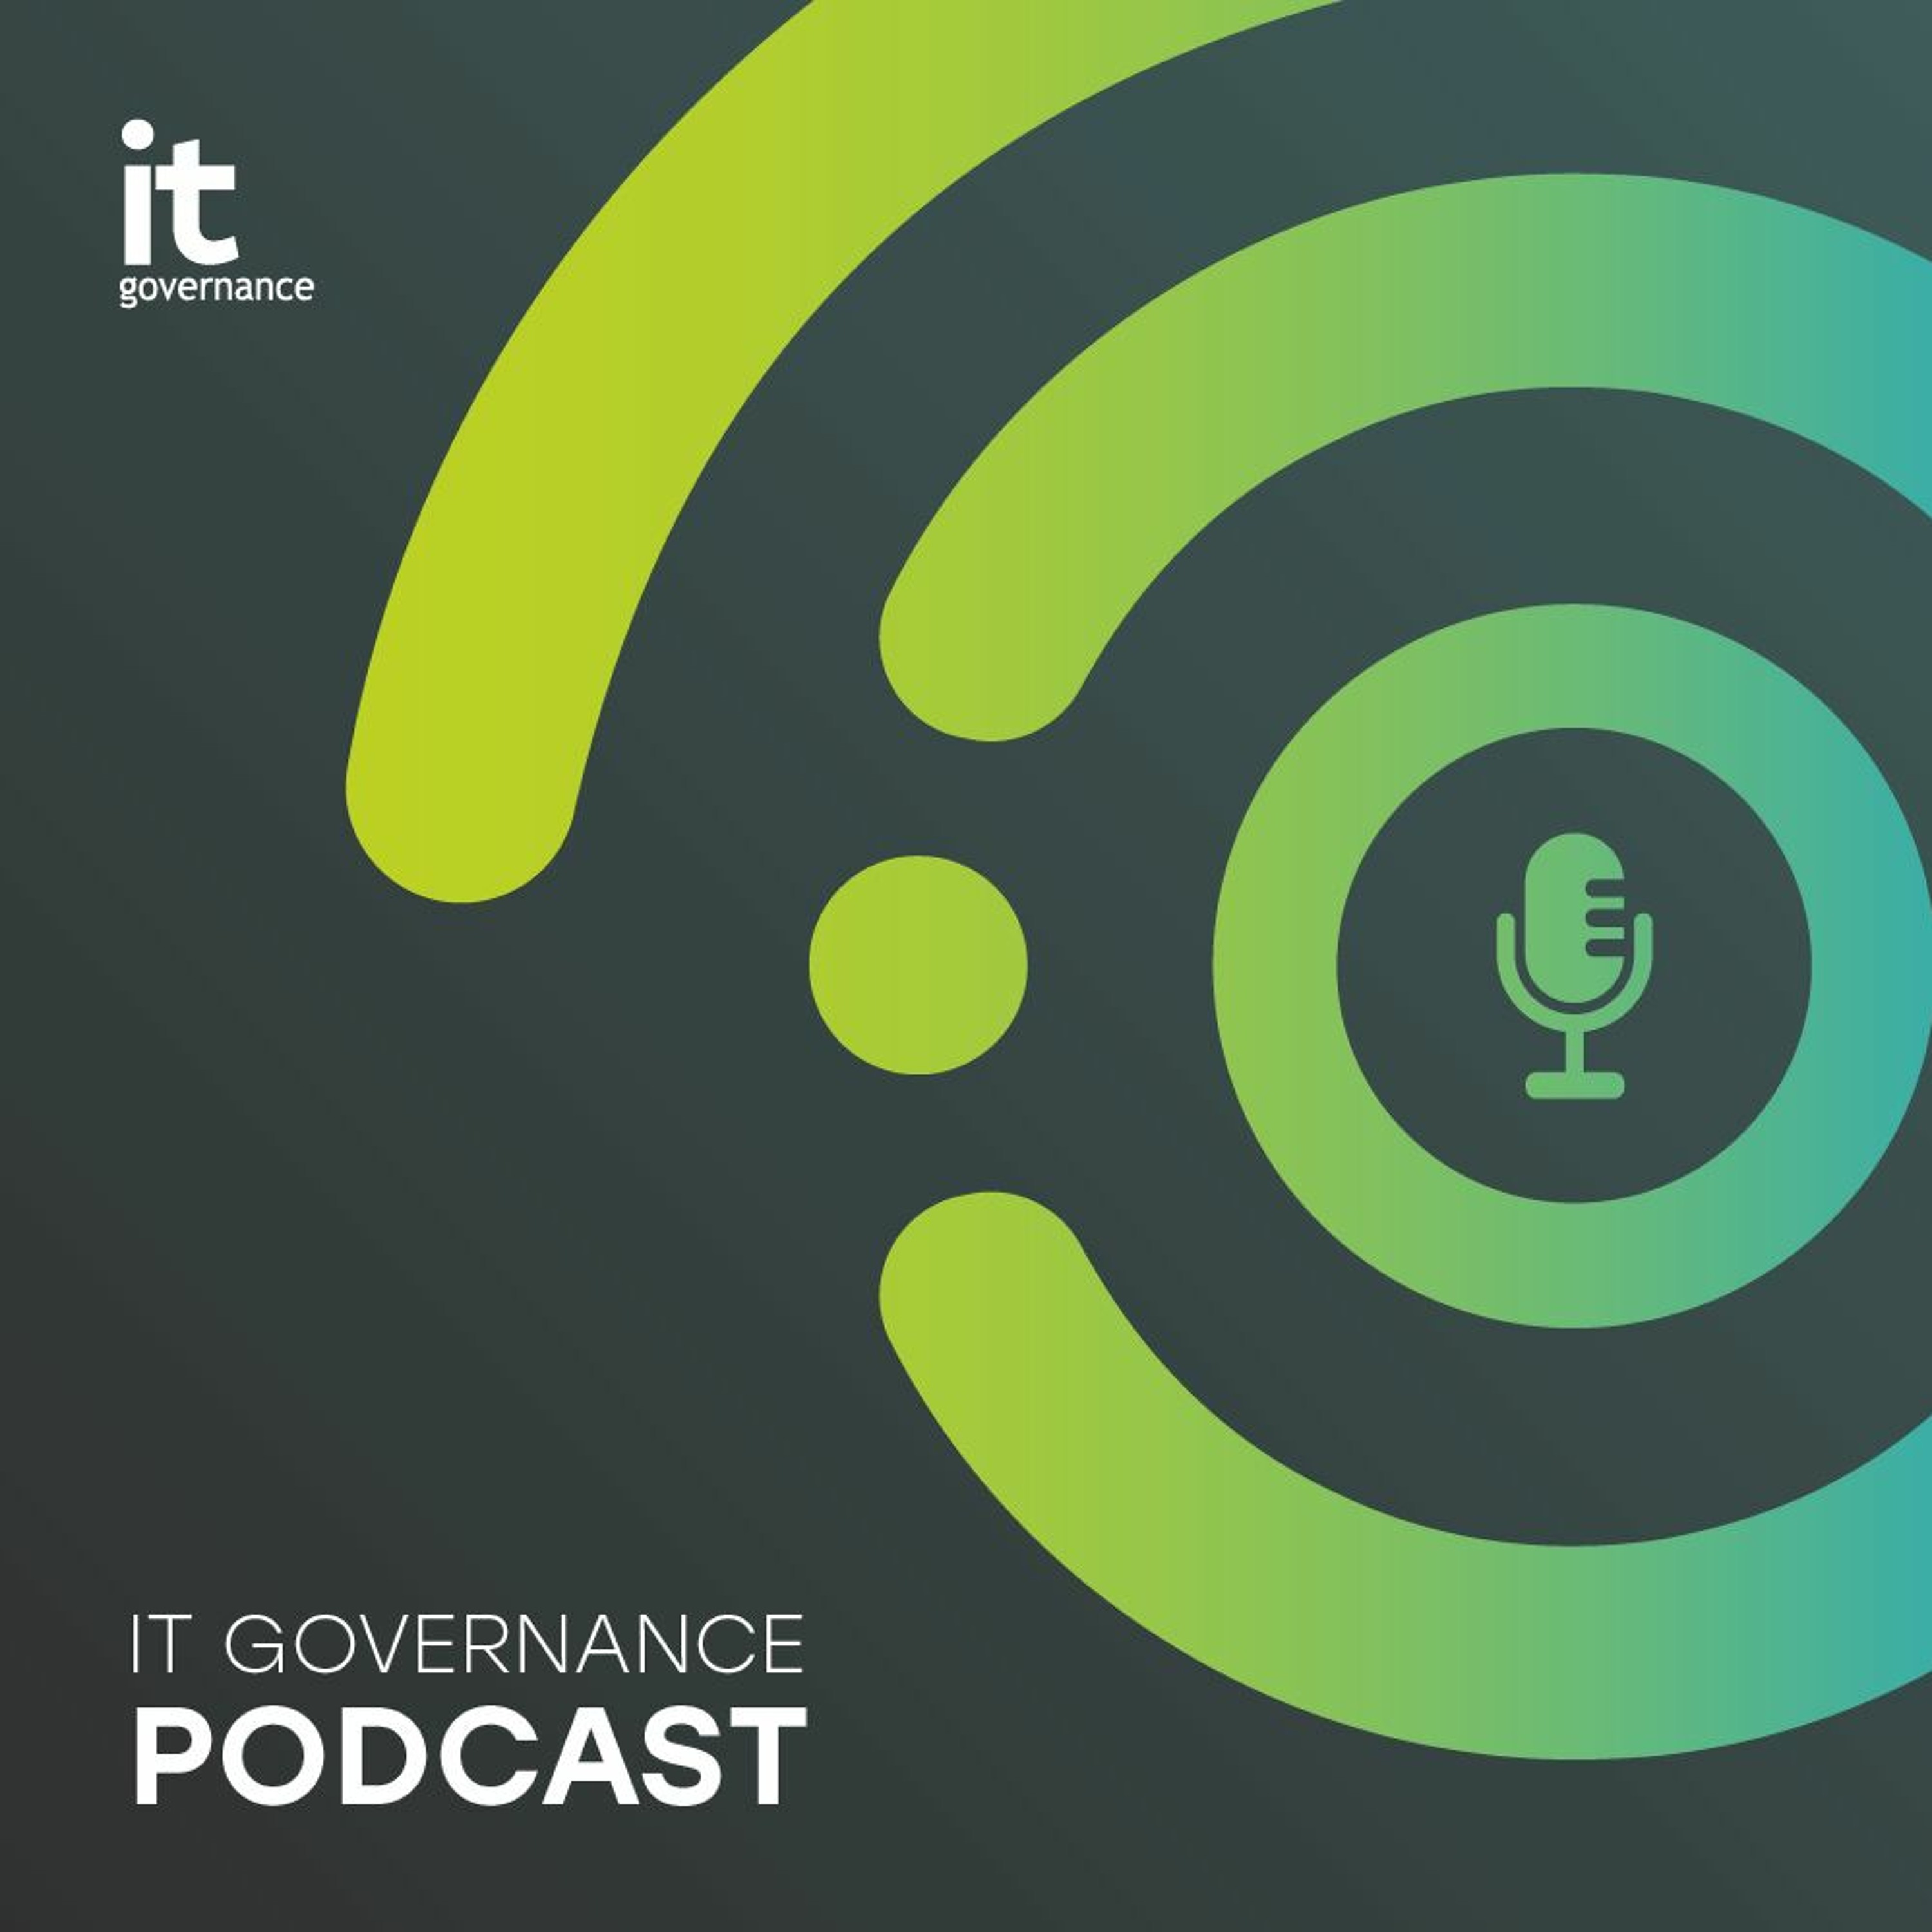 IT Governance Podcast 16.6.23: MOVEit, LinkedIn, Spotify and Google Bard